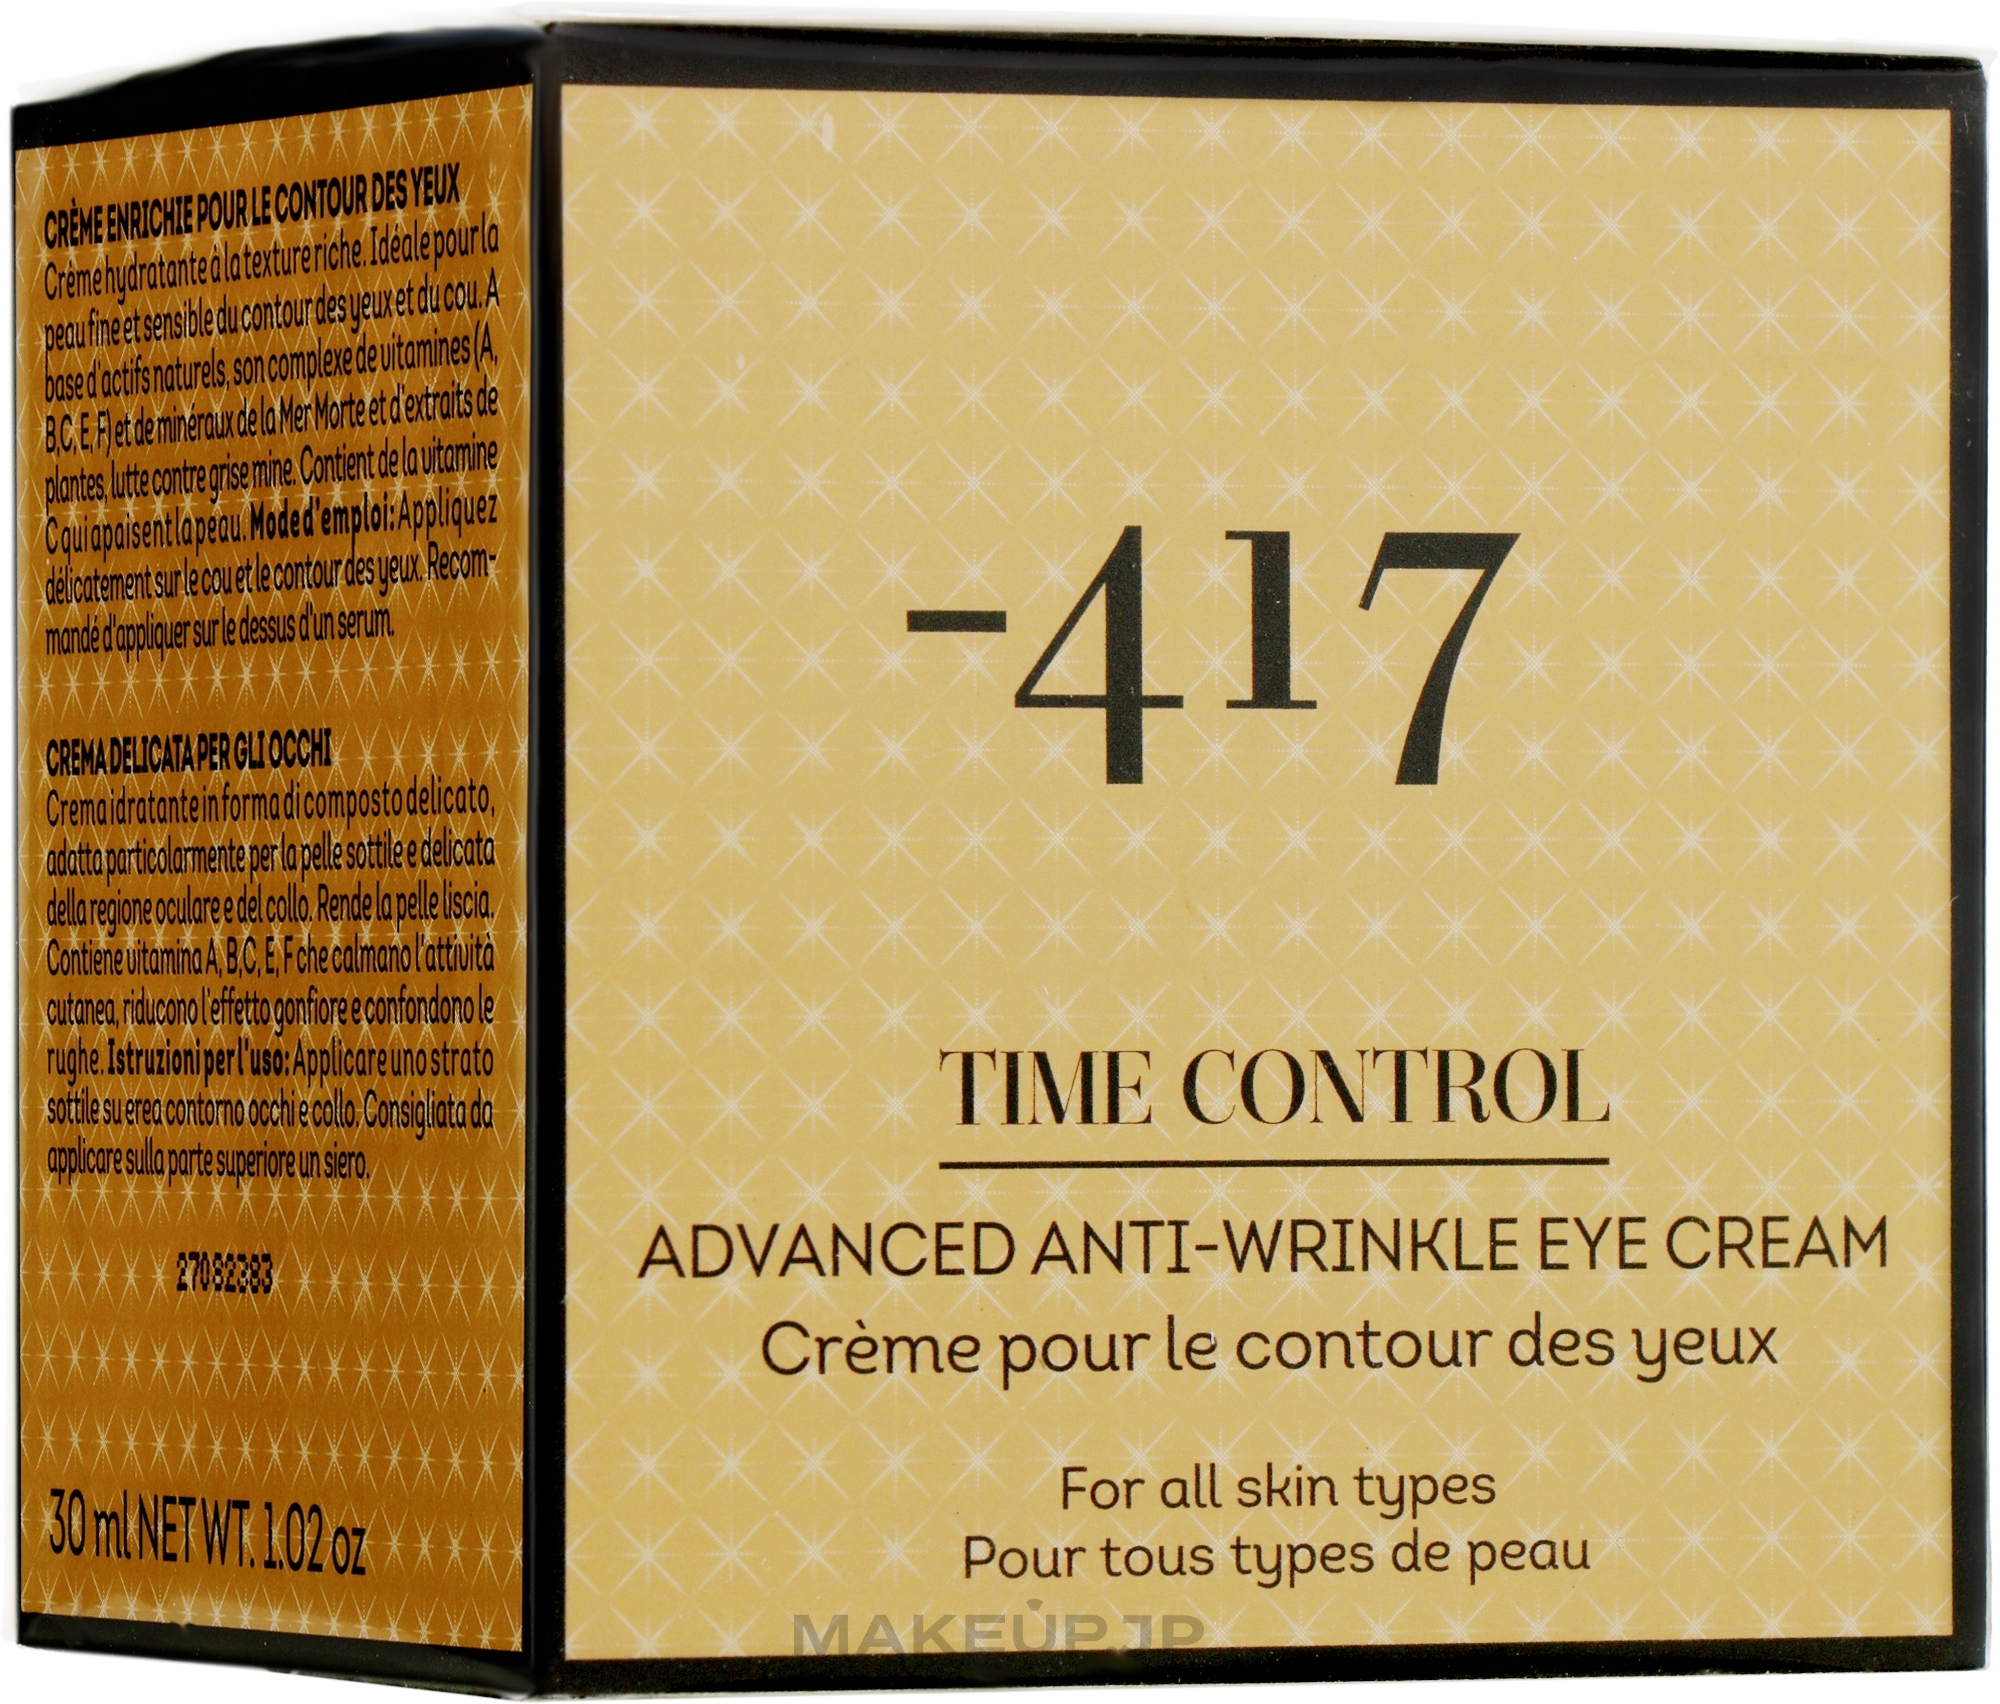 Rich Eye Contour Cream 'Age Control' - -417 Time Control Collection Rich Eye Cream — photo 30 ml